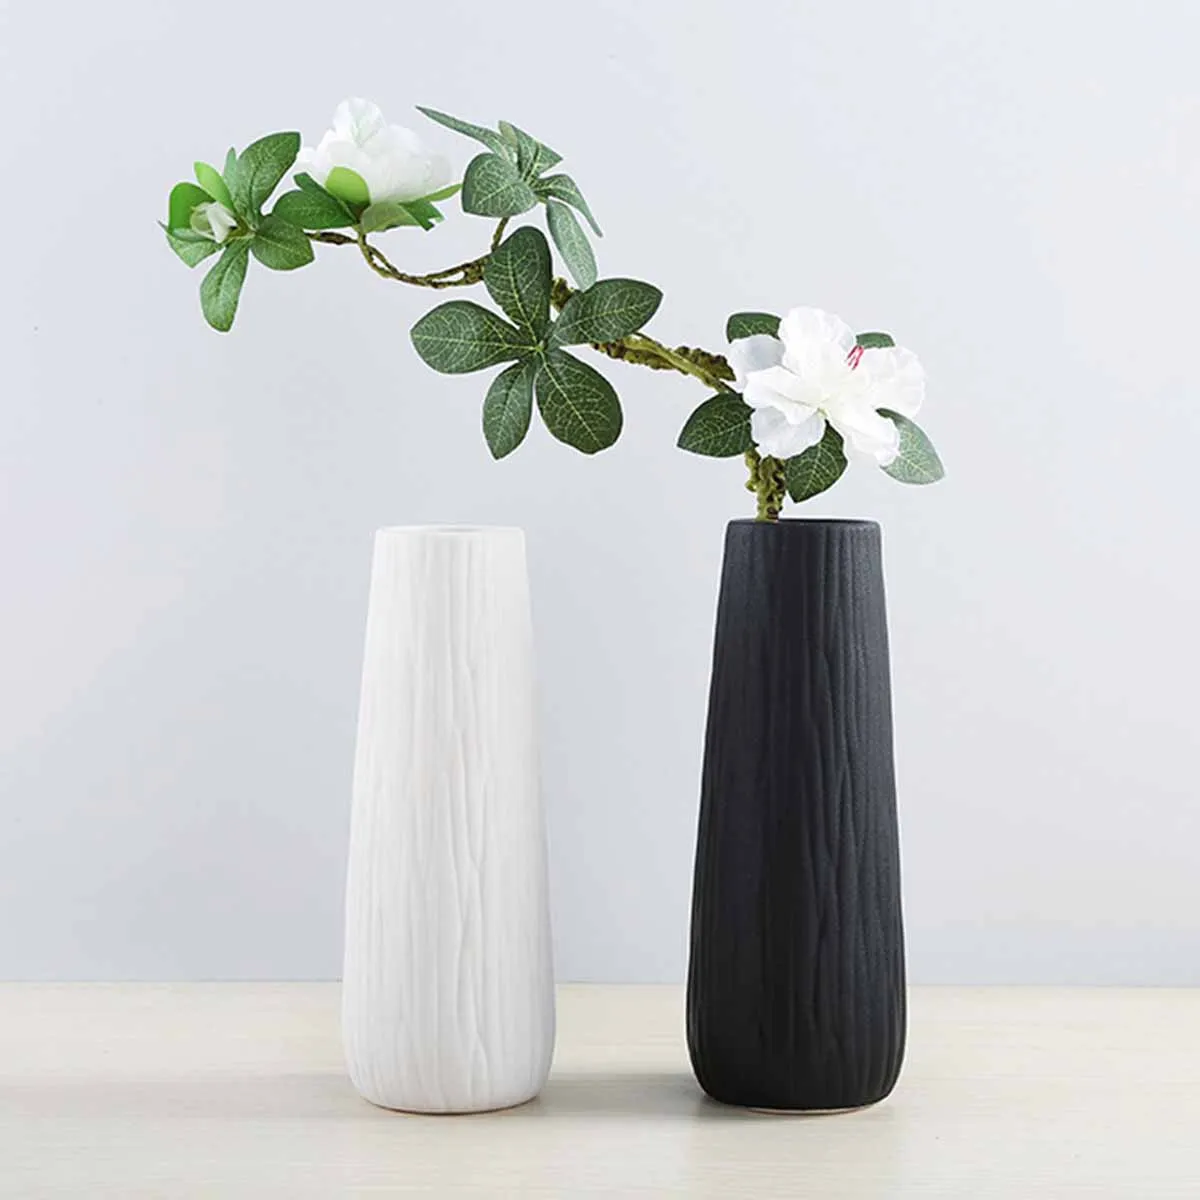 Tilbud Moderne keramiske vaser hvid/sort bordplade vase europæisk stil hjem dekoration vase mode urtepotte kreativ gave tb salg \ Home Decor > Bidsted.dk